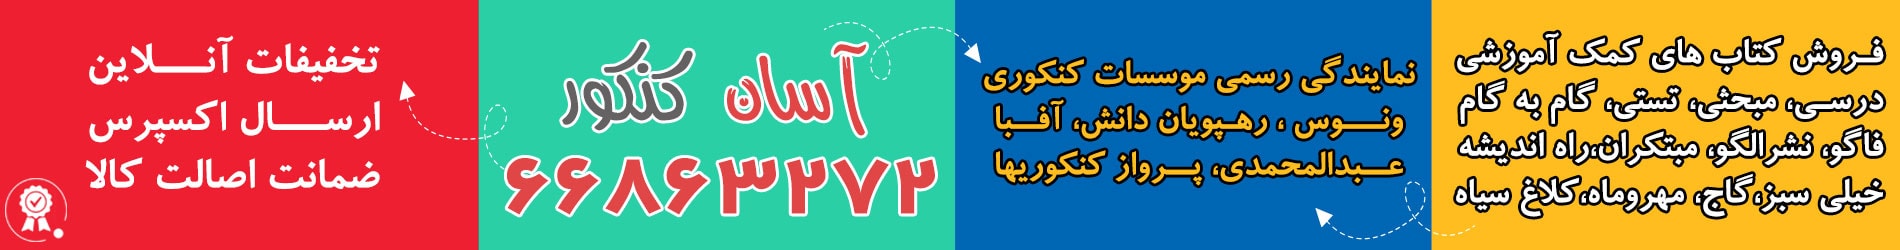 فروشگاه اینترنتی آسان کنکور نمایندگی رسمی فروش محصولات آفبا در تهران و شهرستان 